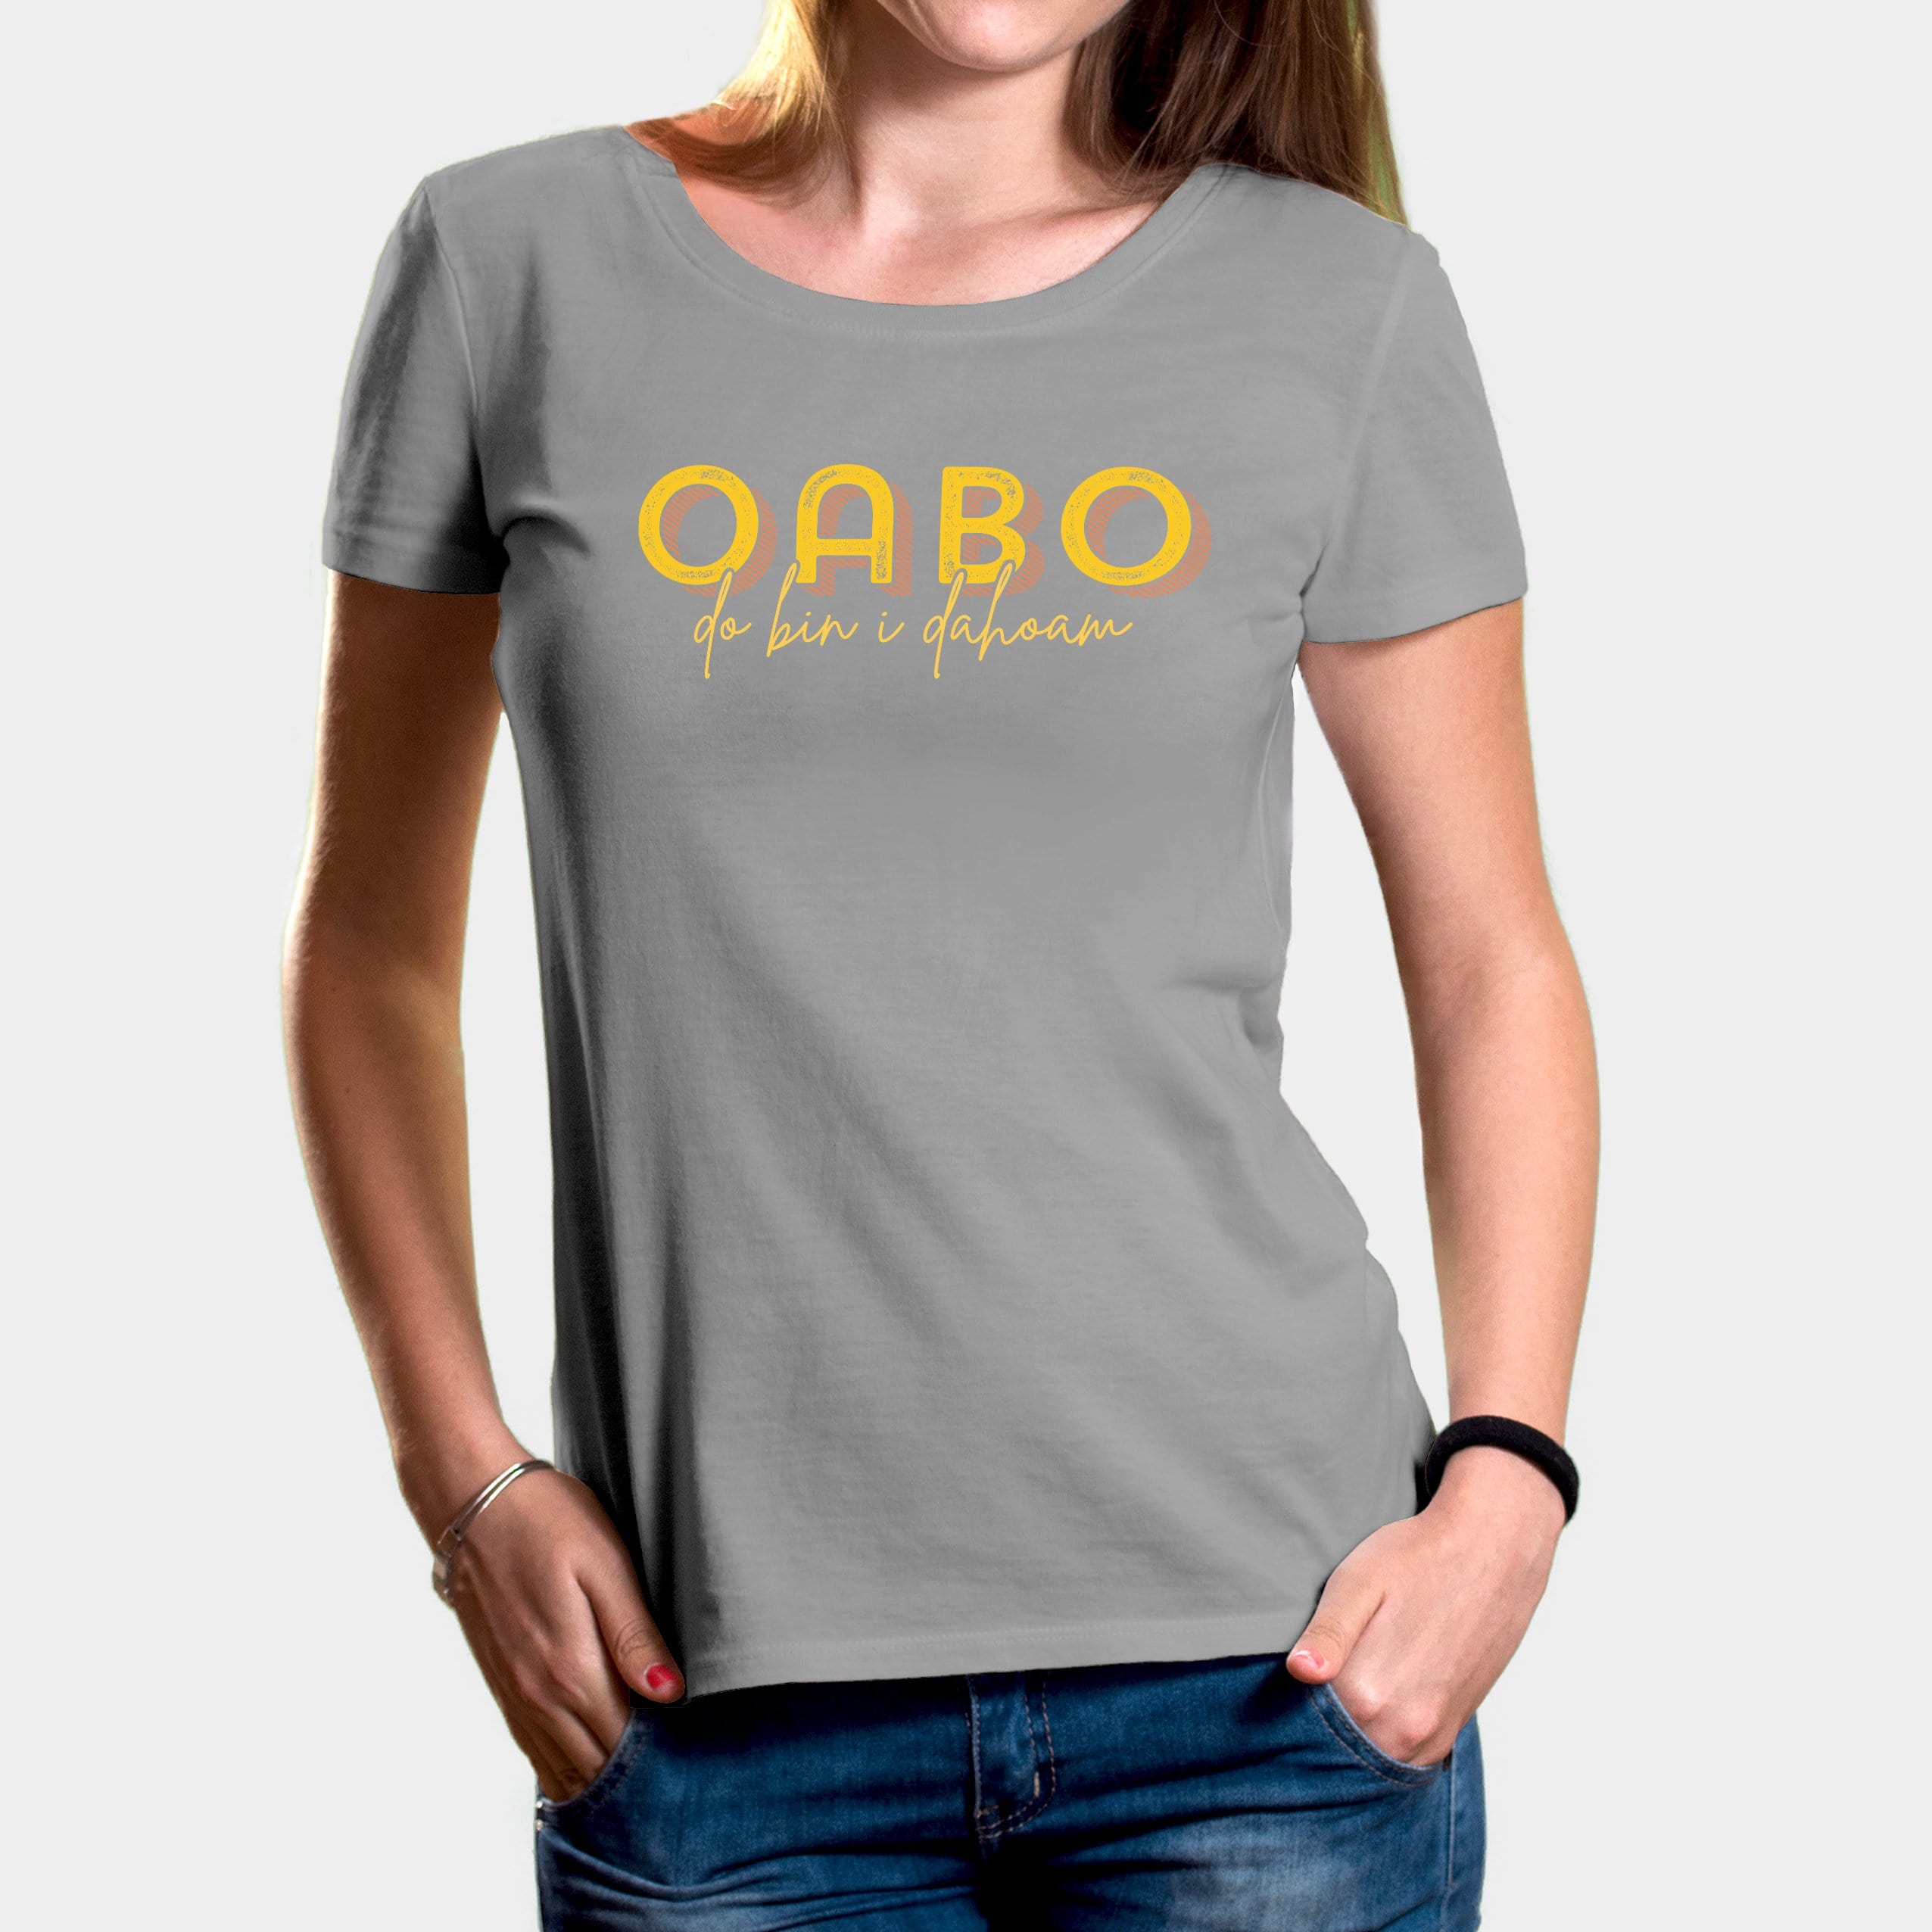 Projekt Damen-T-Shirt "Oabo" XS / opal - aus nachhaltiger und fairer Produktion